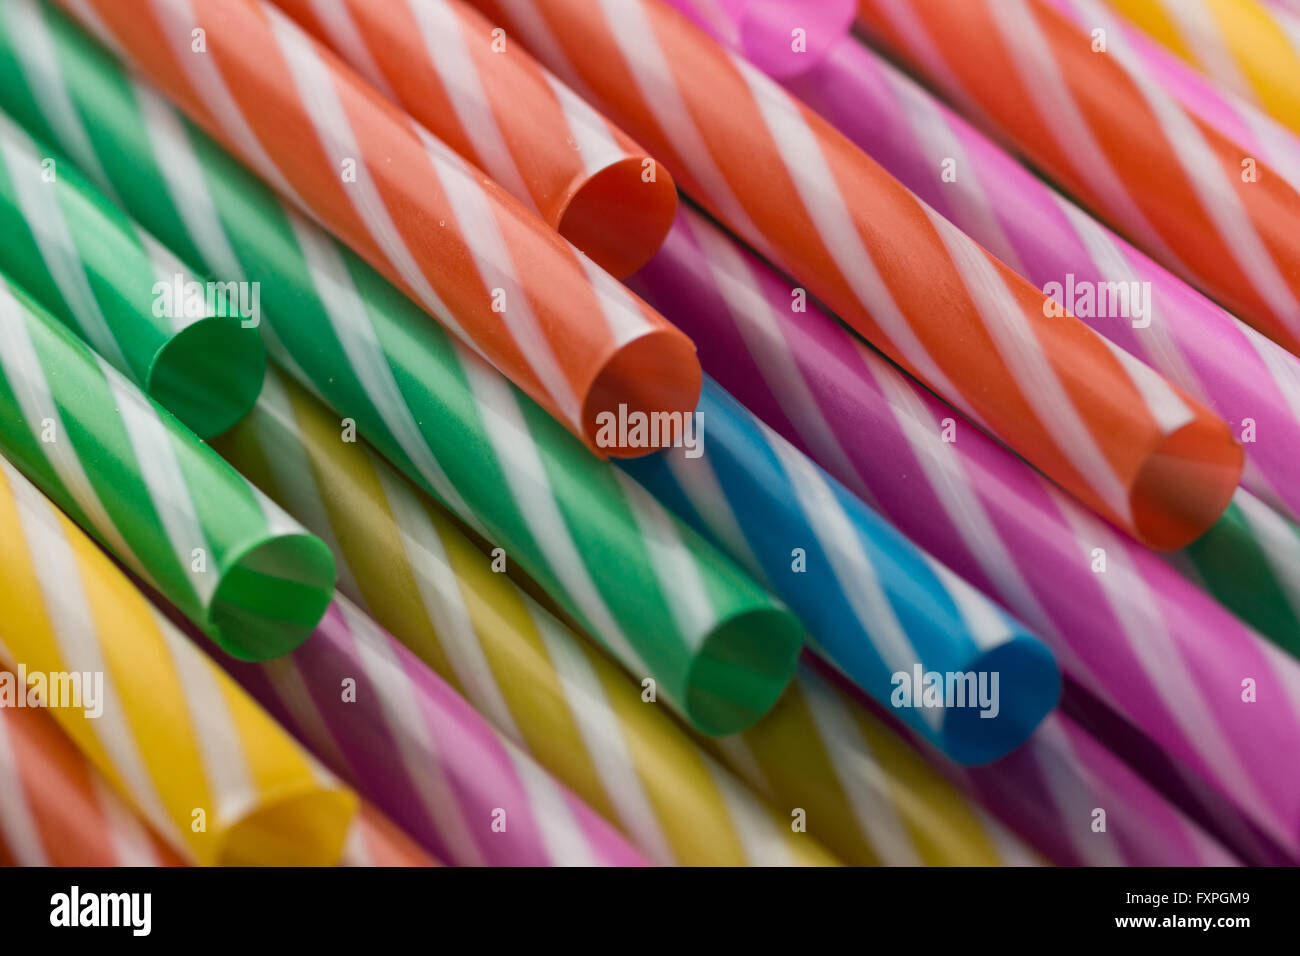 Bild mit hoher Auflösung zeigen mehrere farbige Trinkhalme. Stockfoto